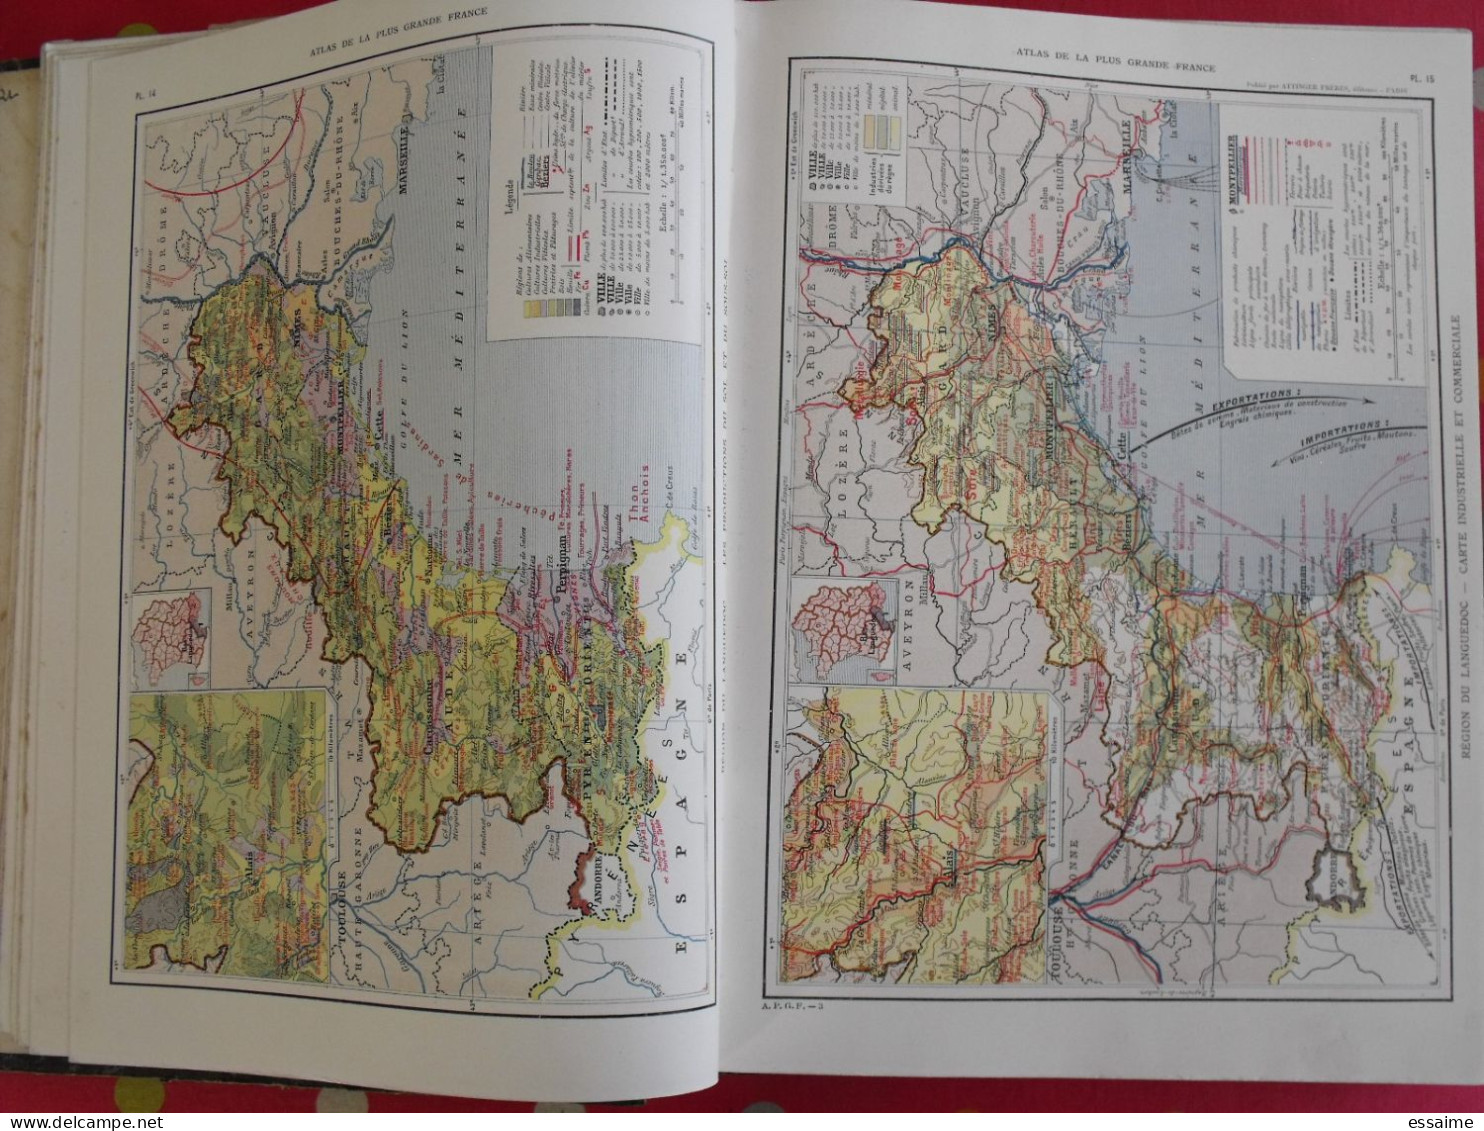 atlas de la plus grande France. onésime Reclus. Attinger frères, 1911. géographie colonies indochine maroc algérie